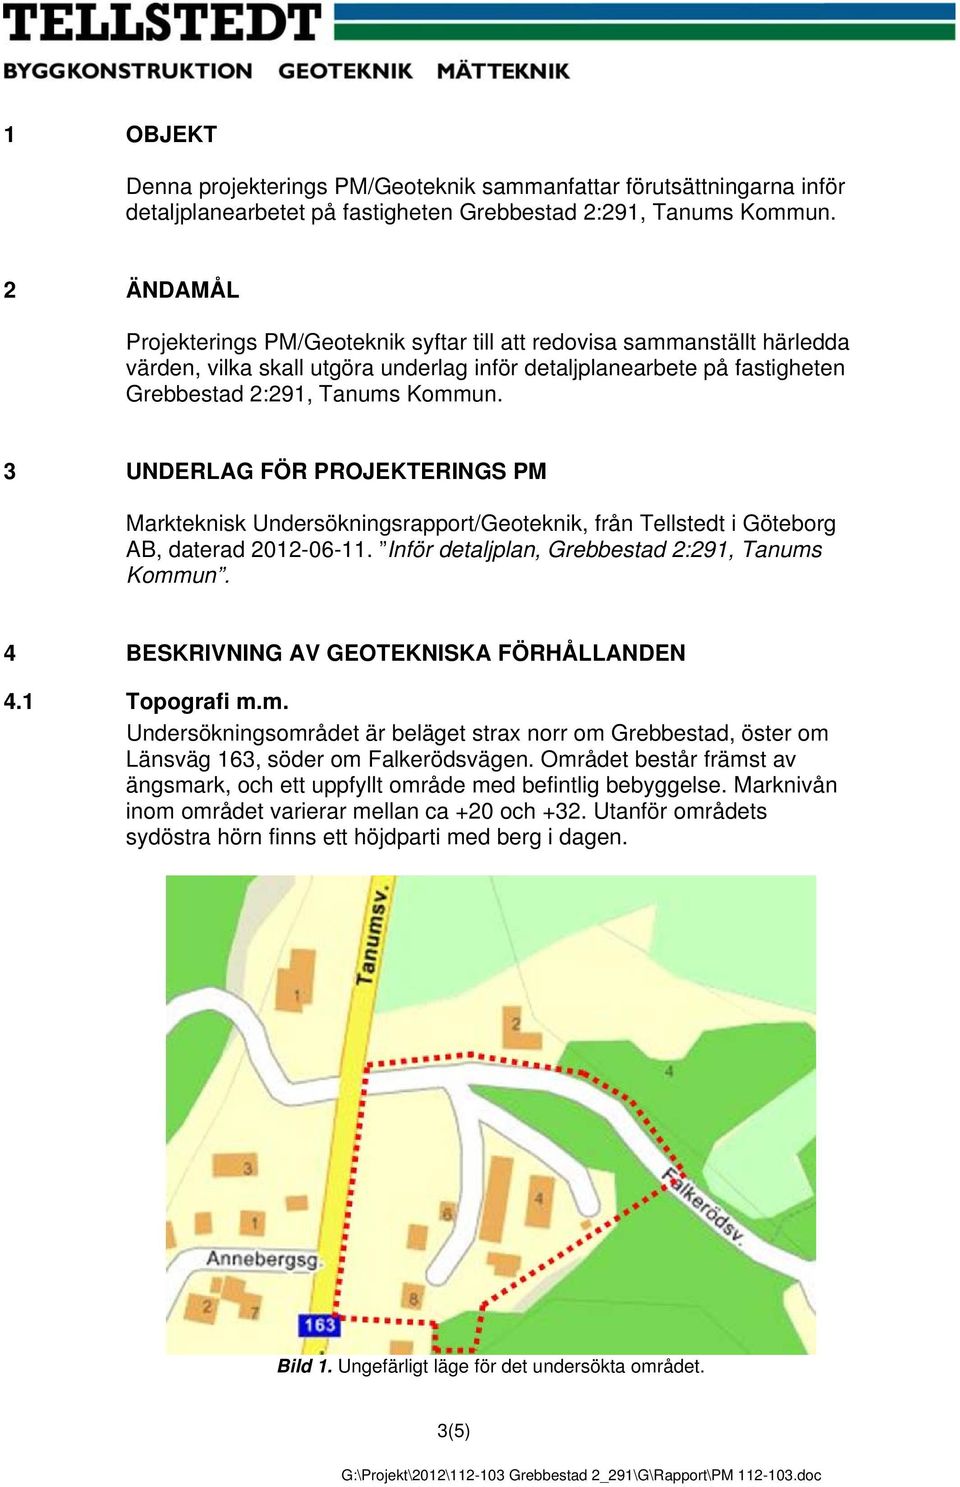 3 UNDERLAG FÖR PROJEKTERINGS PM Markteknisk Undersökningsrapport/Geoteknik, från Tellstedt i Göteborg AB, daterad 2012-06-11. Inför detaljplan, Grebbestad 2:291, Tanums Kommun.